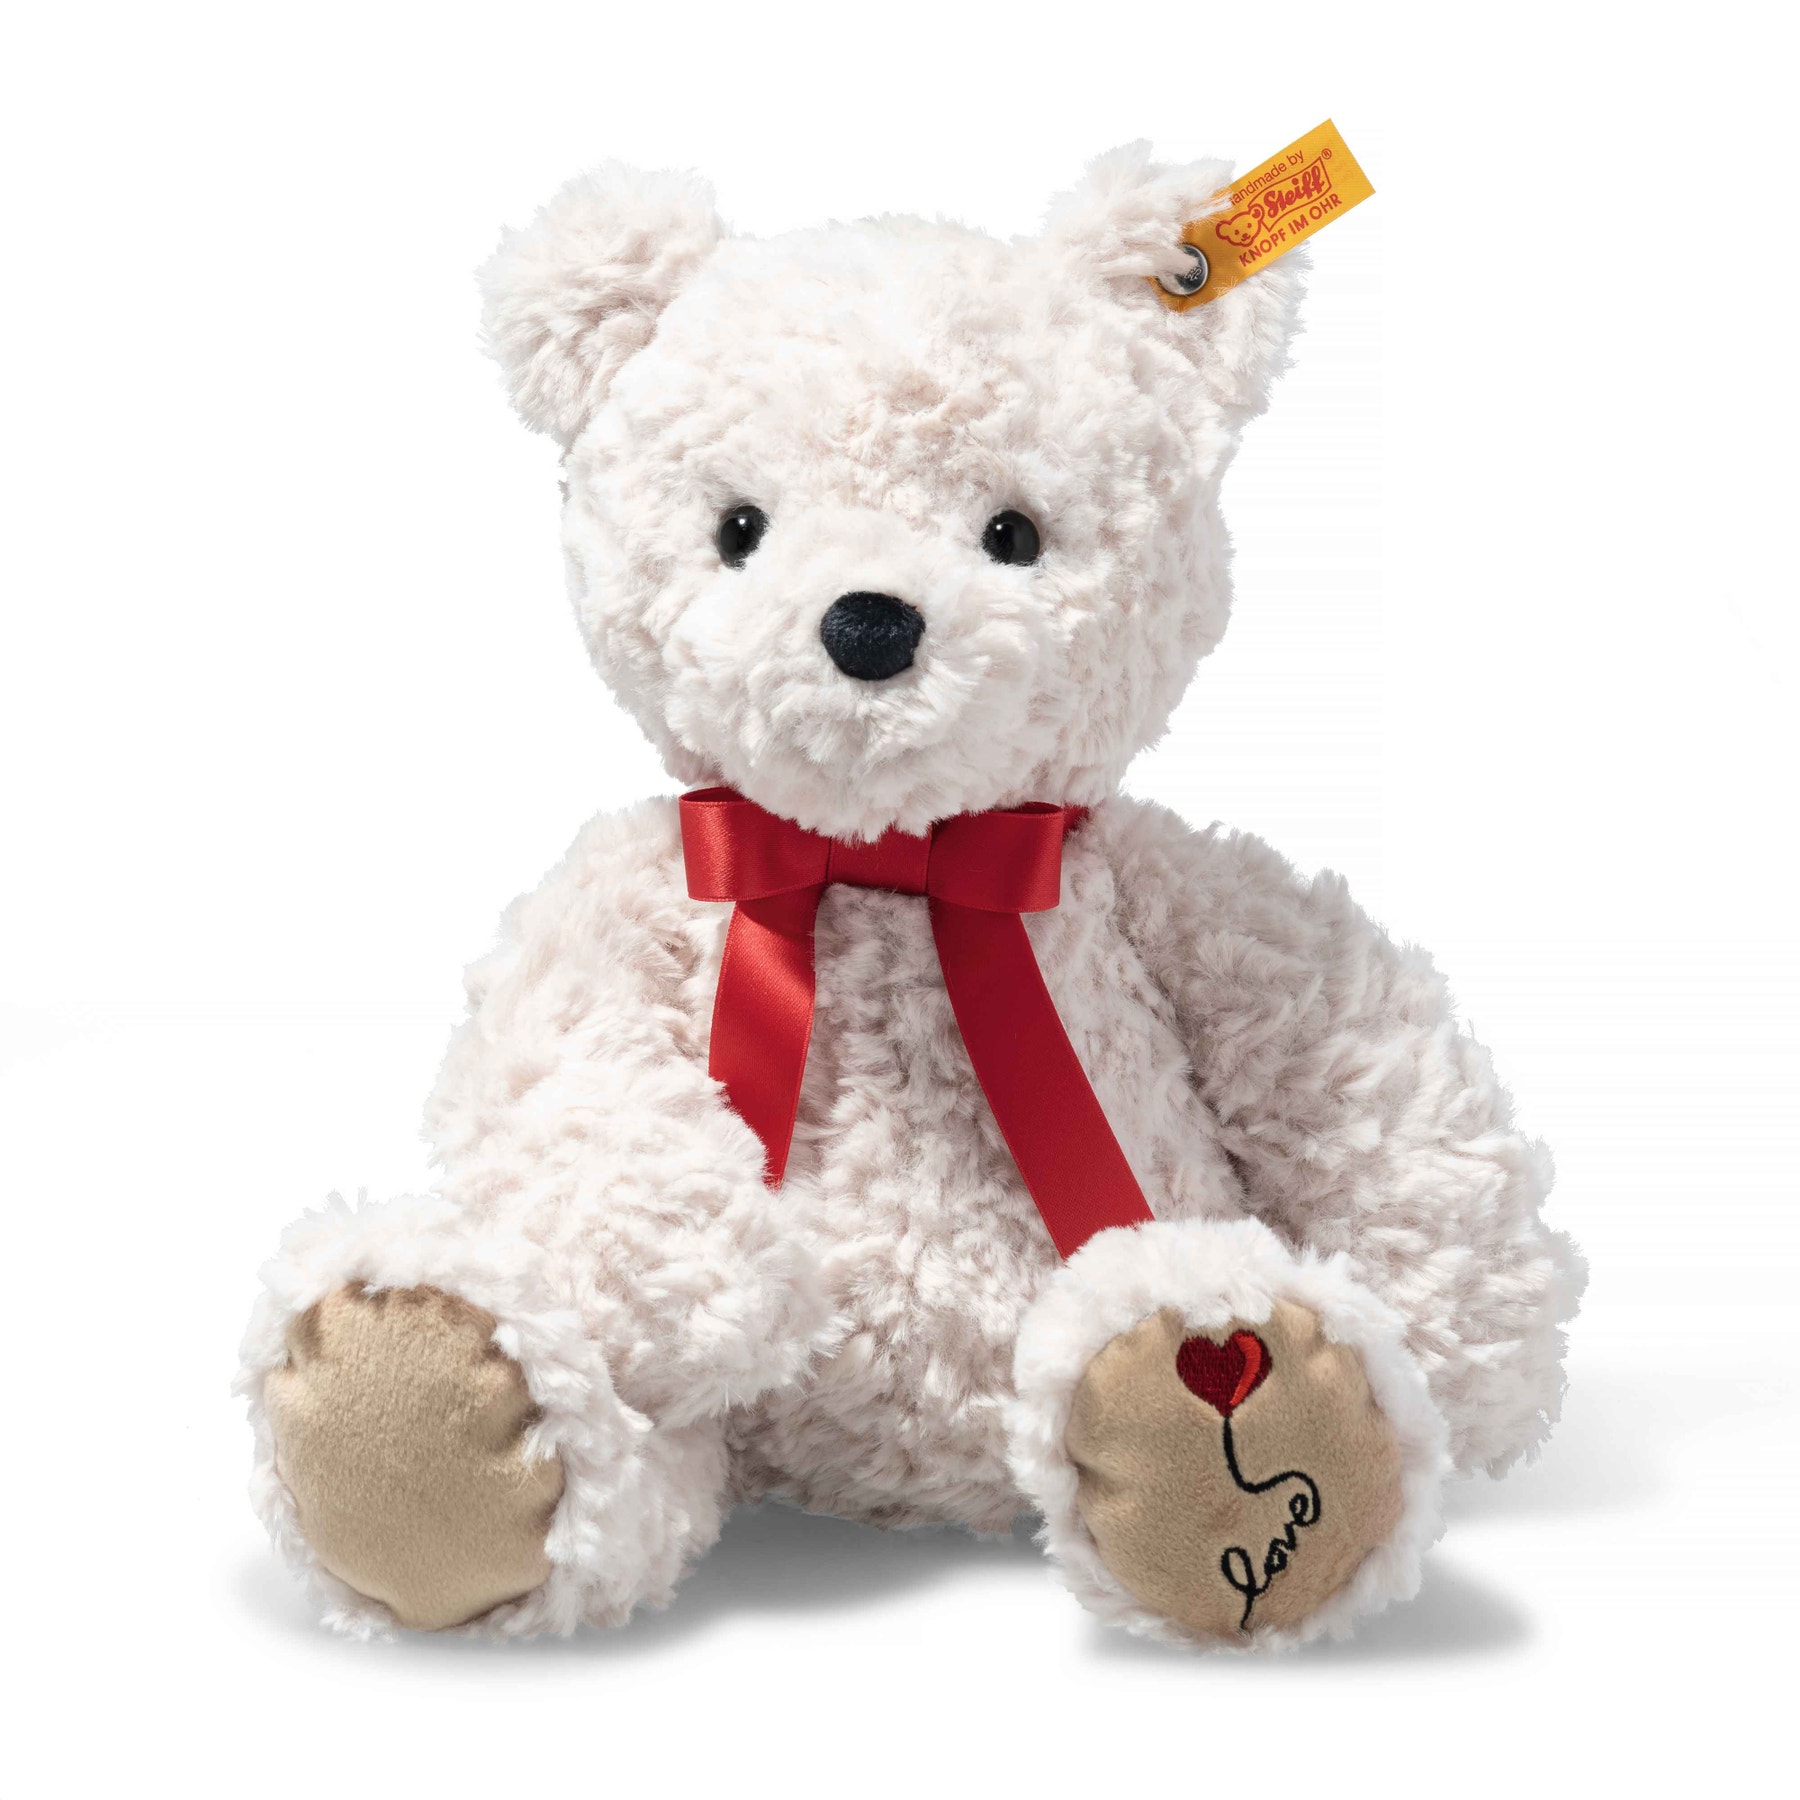 Steiff Jimmy Teddy Bear 12” Soft Cuddly Friends Stuffed Animal